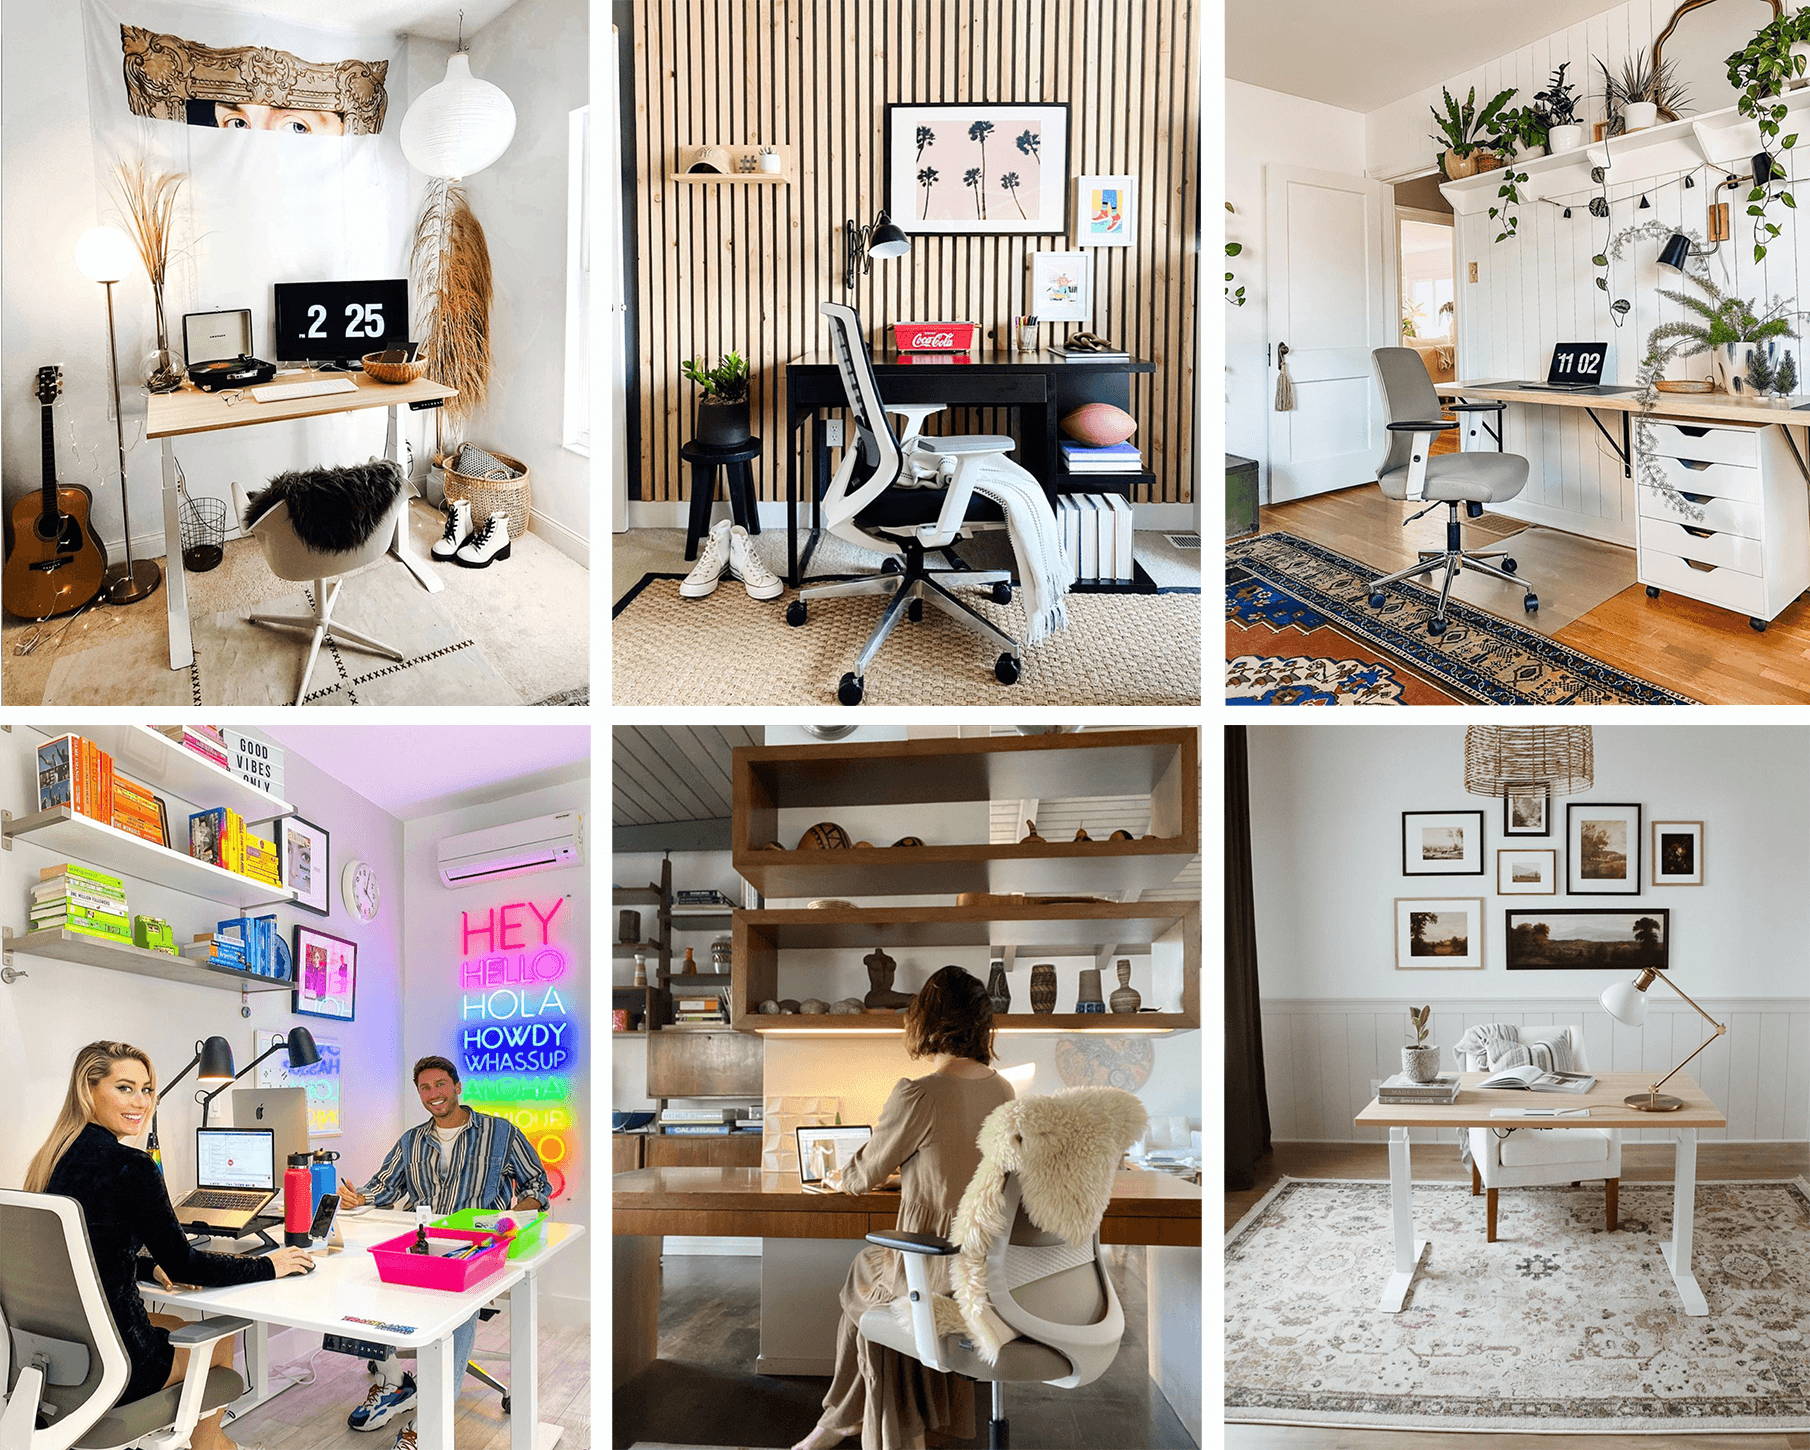 78 Home Office Ideas & Decor - Design an Inspiring Workspace!